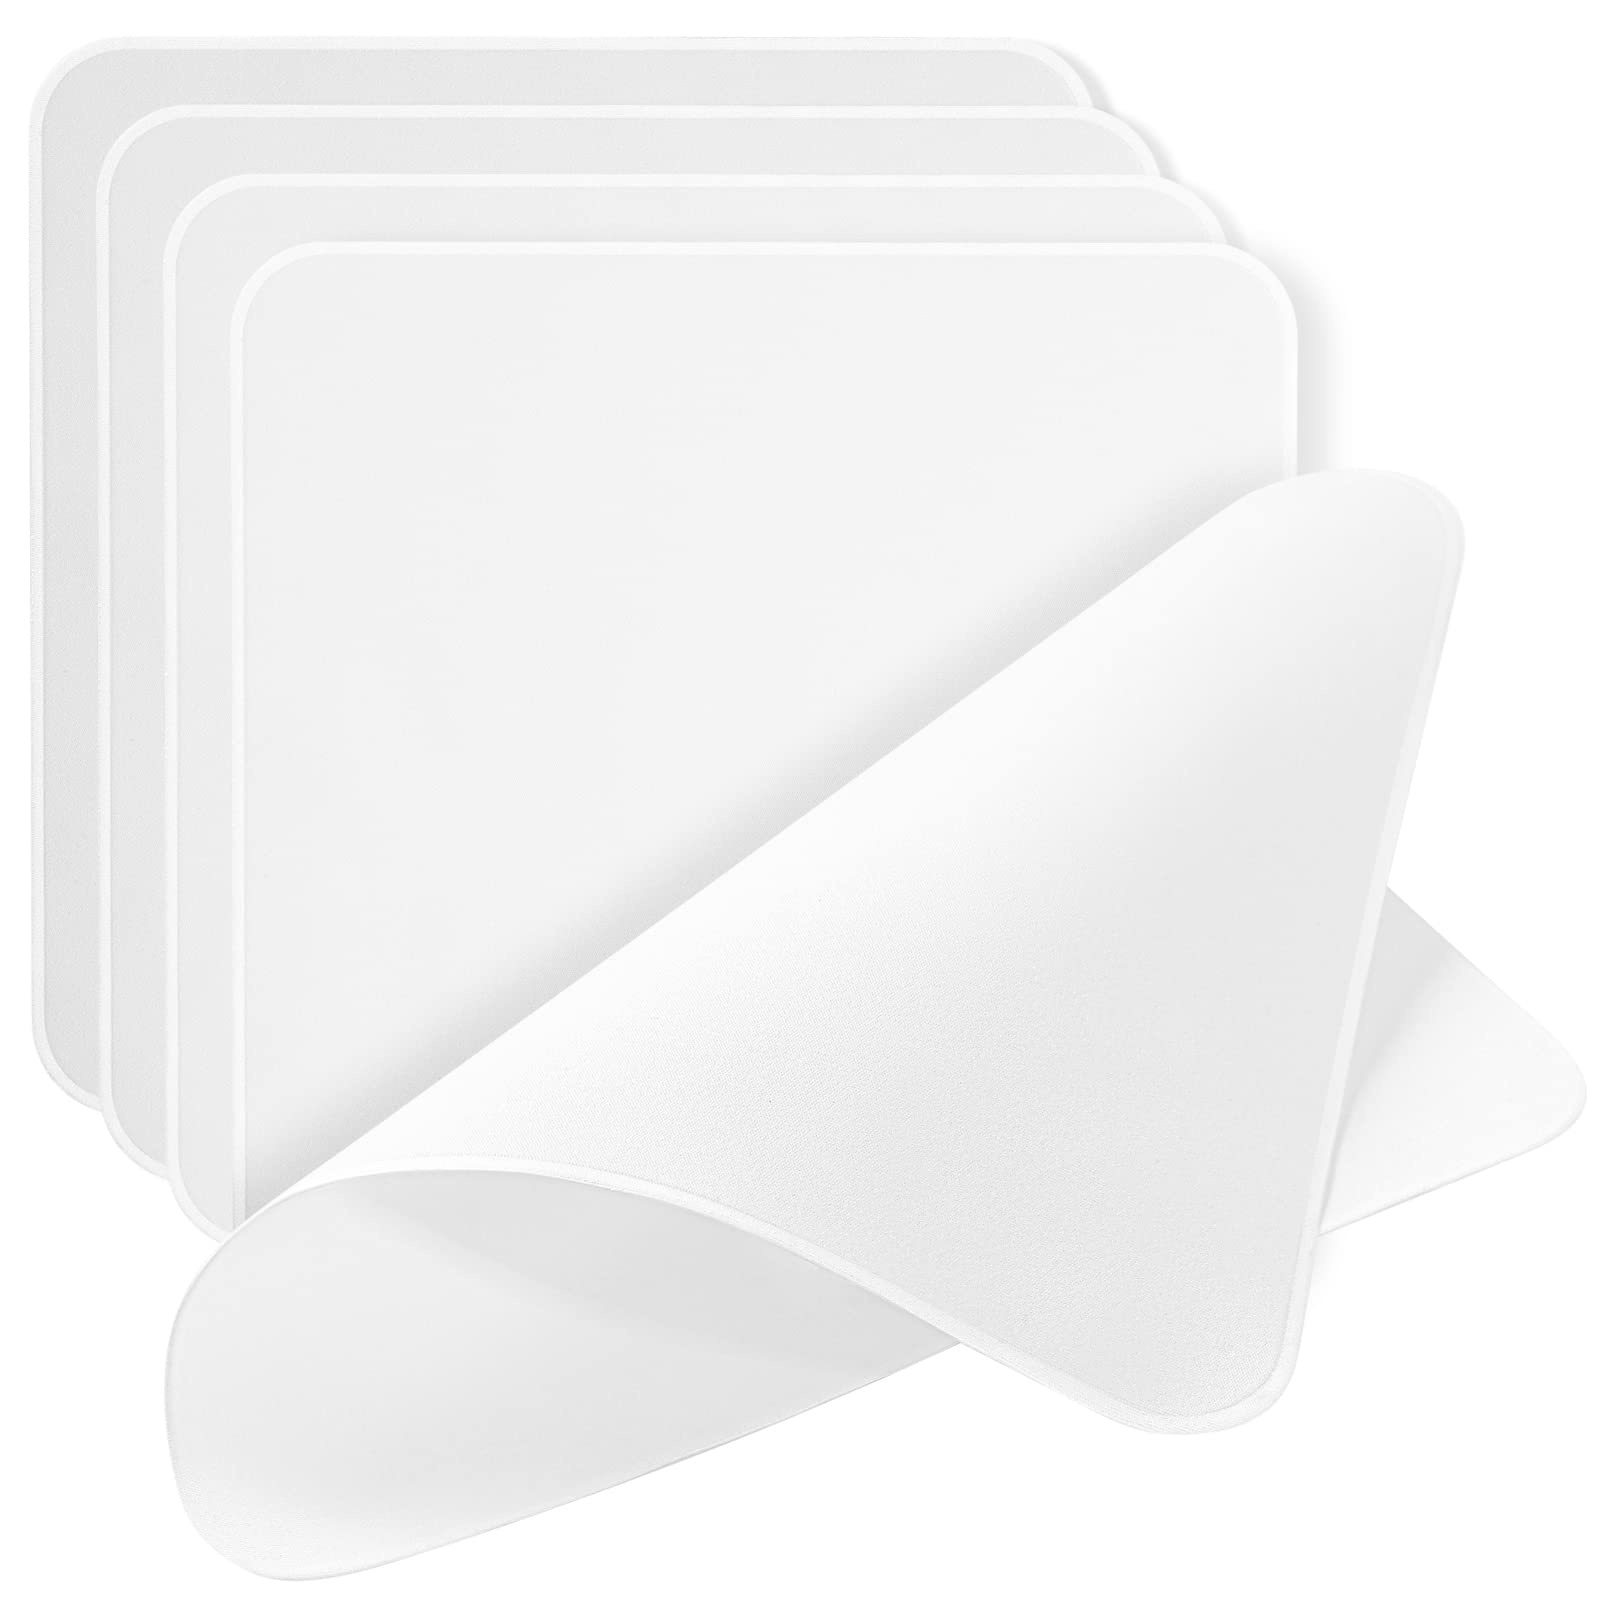 AAwipes Poliertücher, doppellagig, 5 Packungen (16 x 16 cm, Weiß, 320 g/m2), kompatibel mit Apple iPhone, iPad, MacBook, iWatch, weiche und nicht scheuernde superfeine Mikrofaser-Reinigungstücher